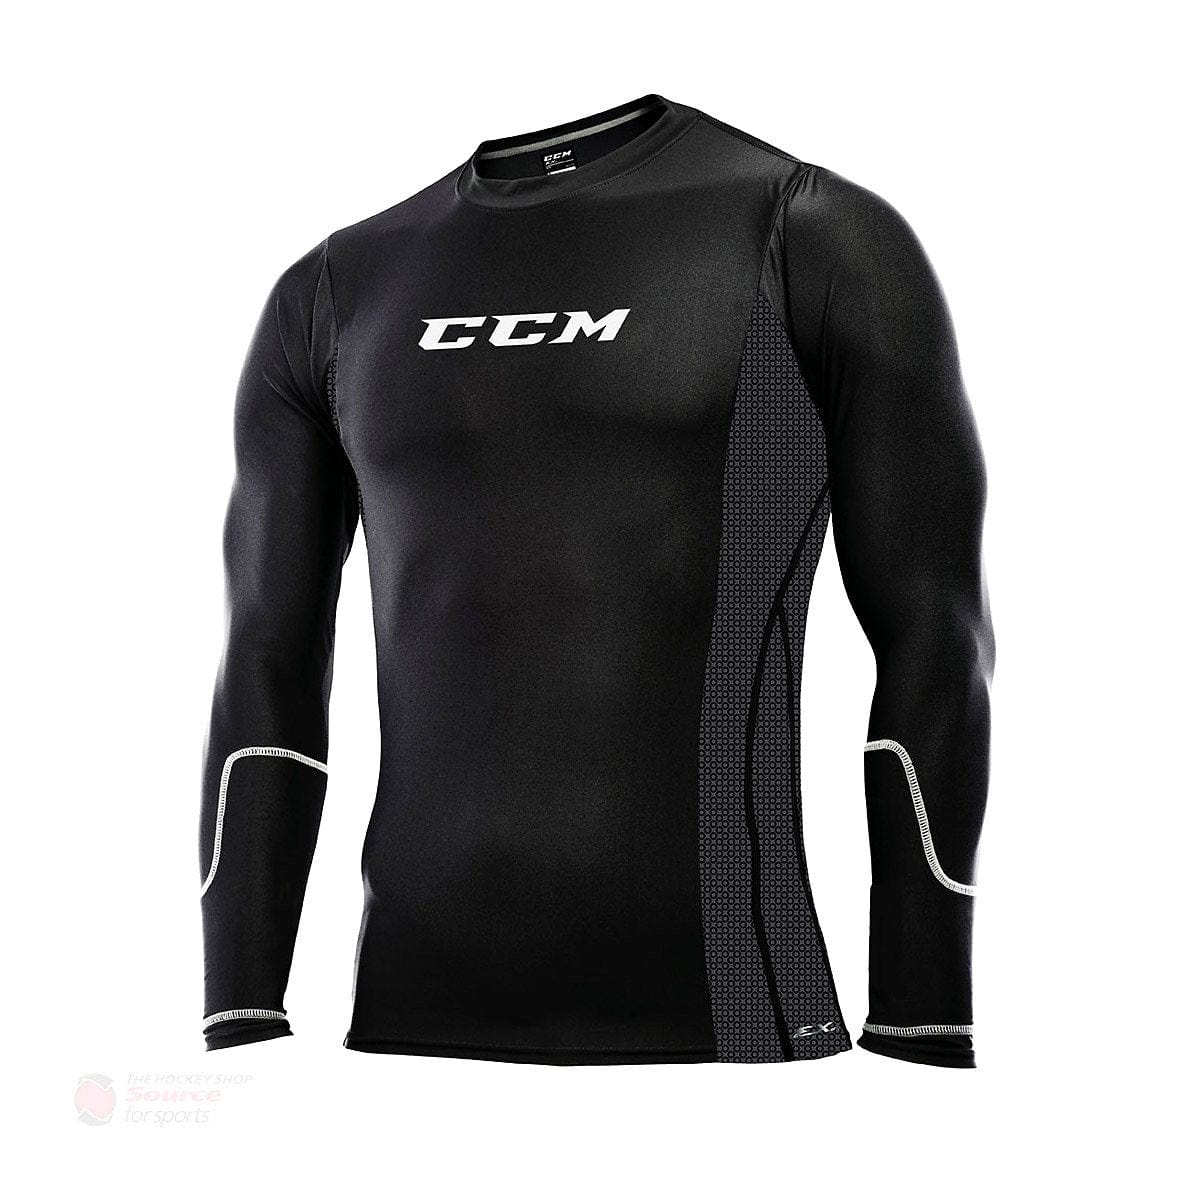 CCM Cut Resistant Pro Senior Compression Shirt